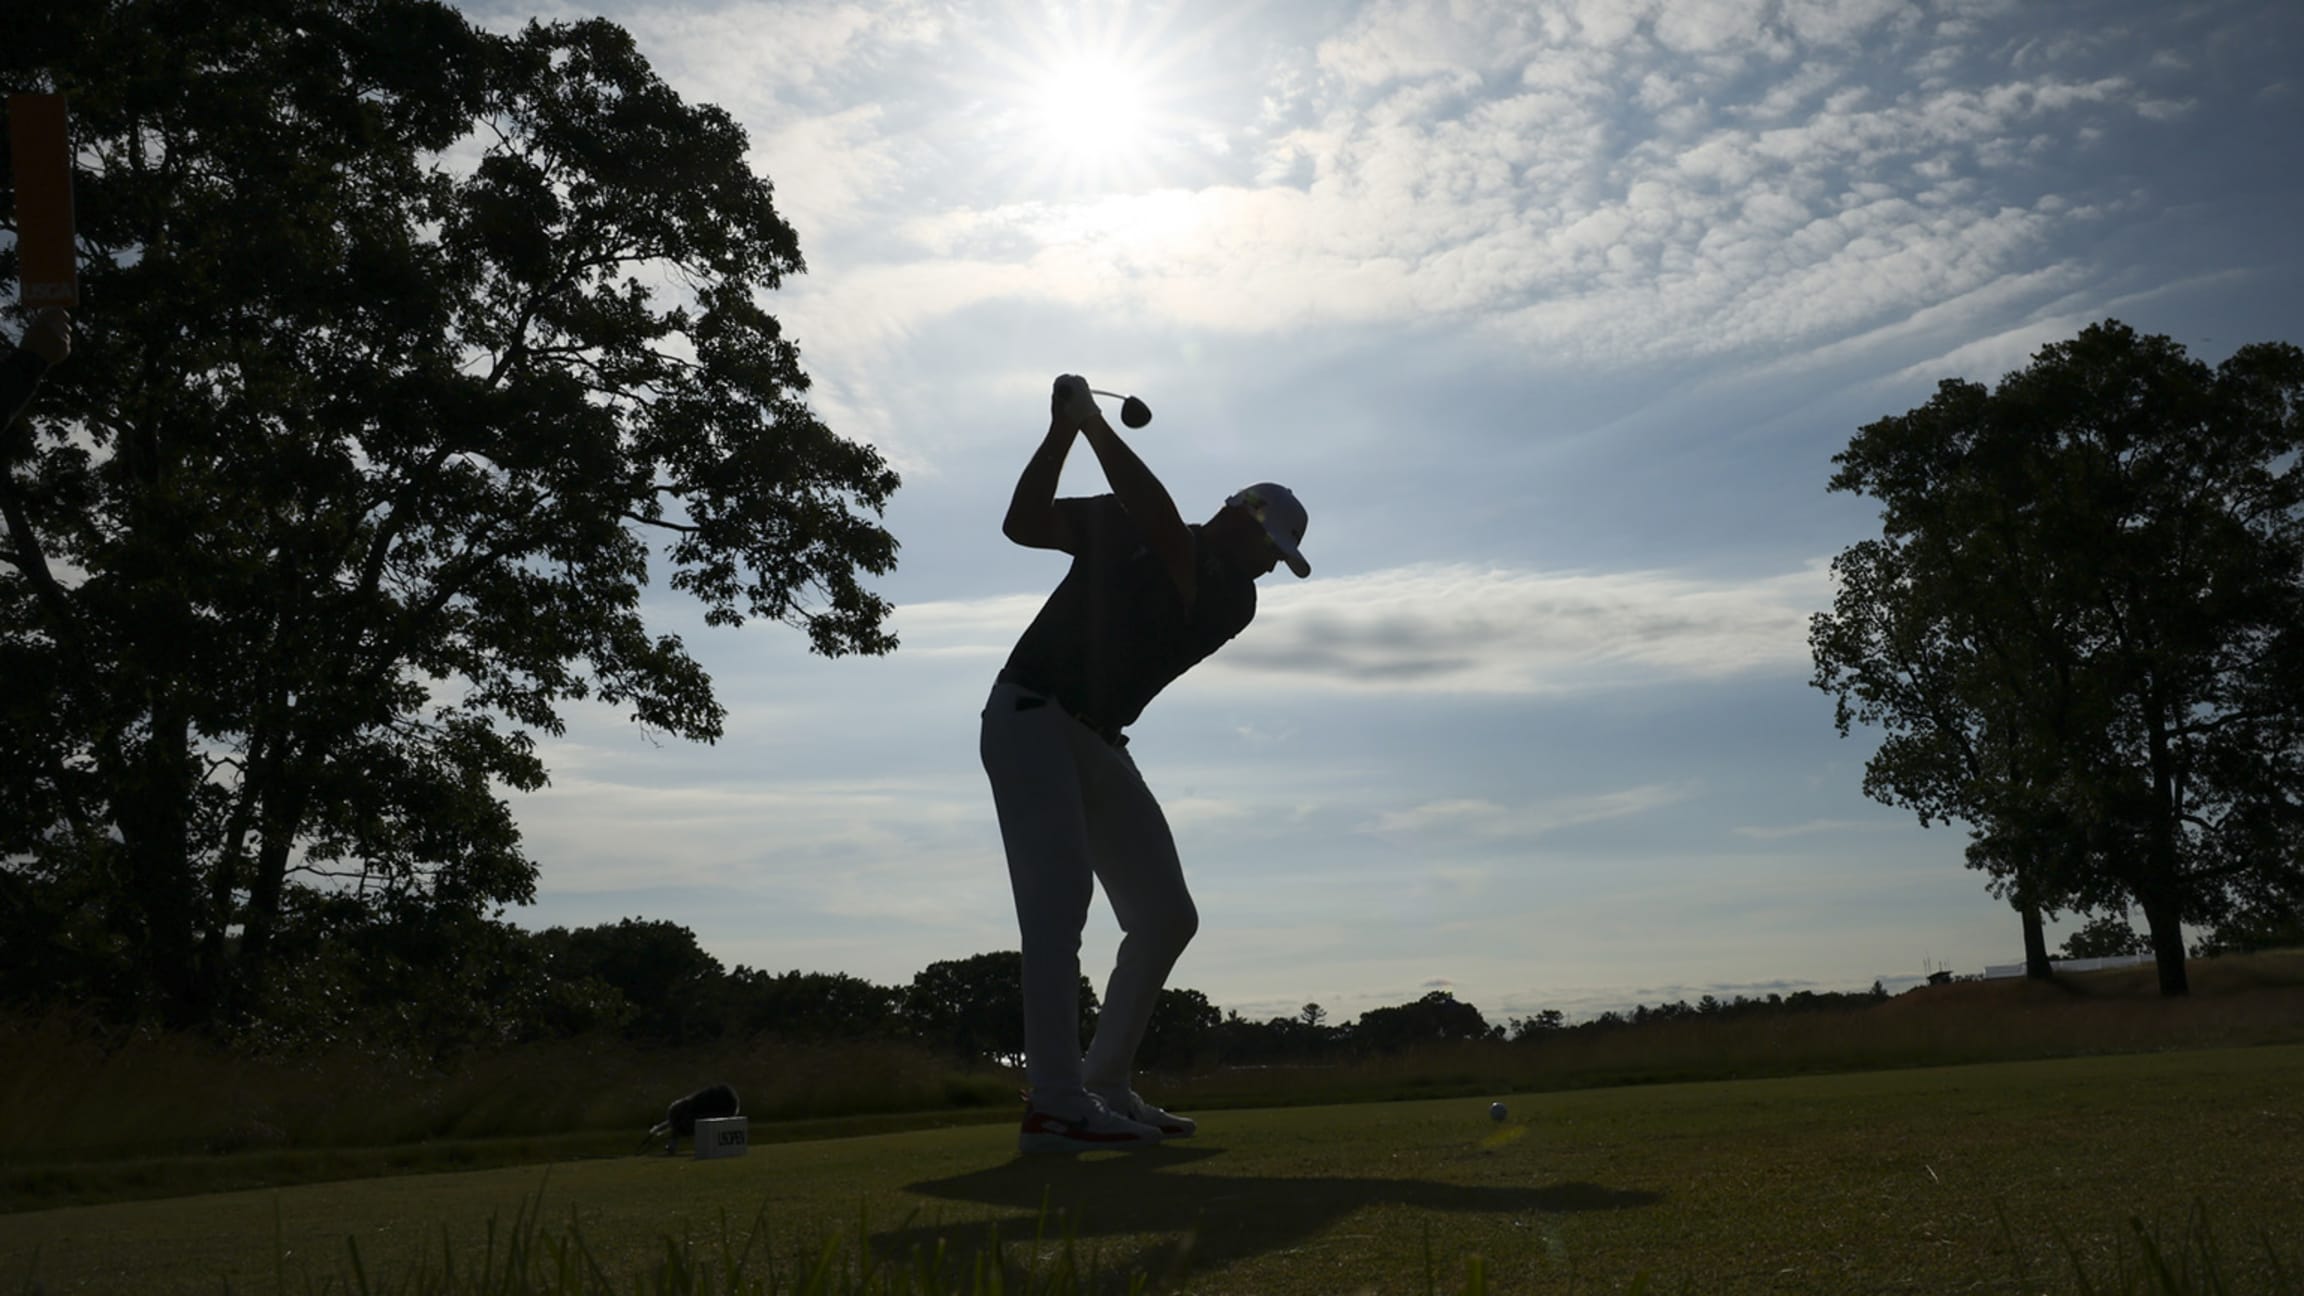 O Portal Brasileiro do Golfe > Tudo sobre golfe: Notícias, Fotos